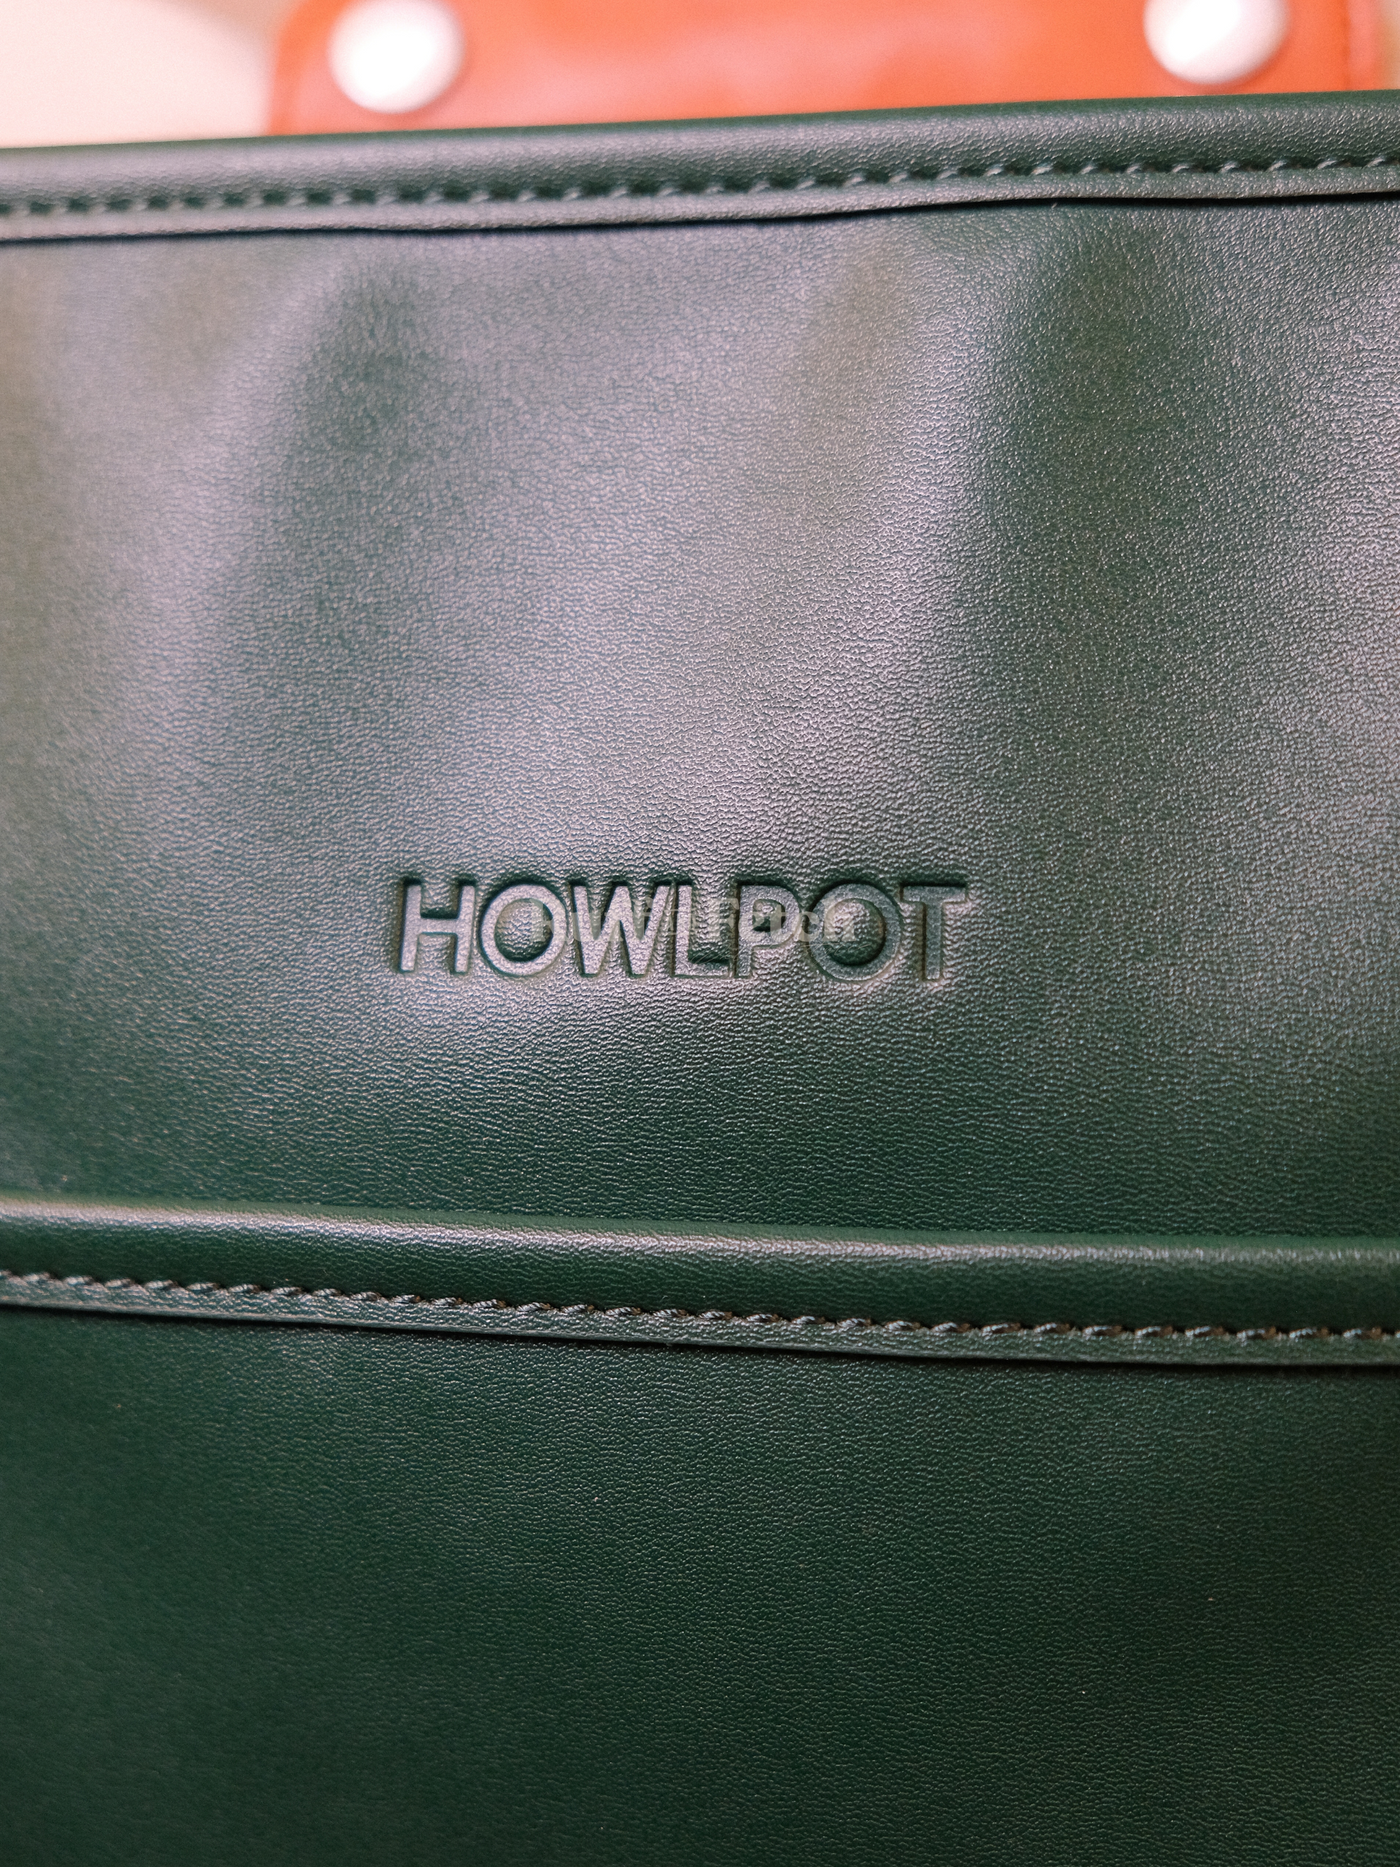 Howlpot | 時尚波士頓皮革包